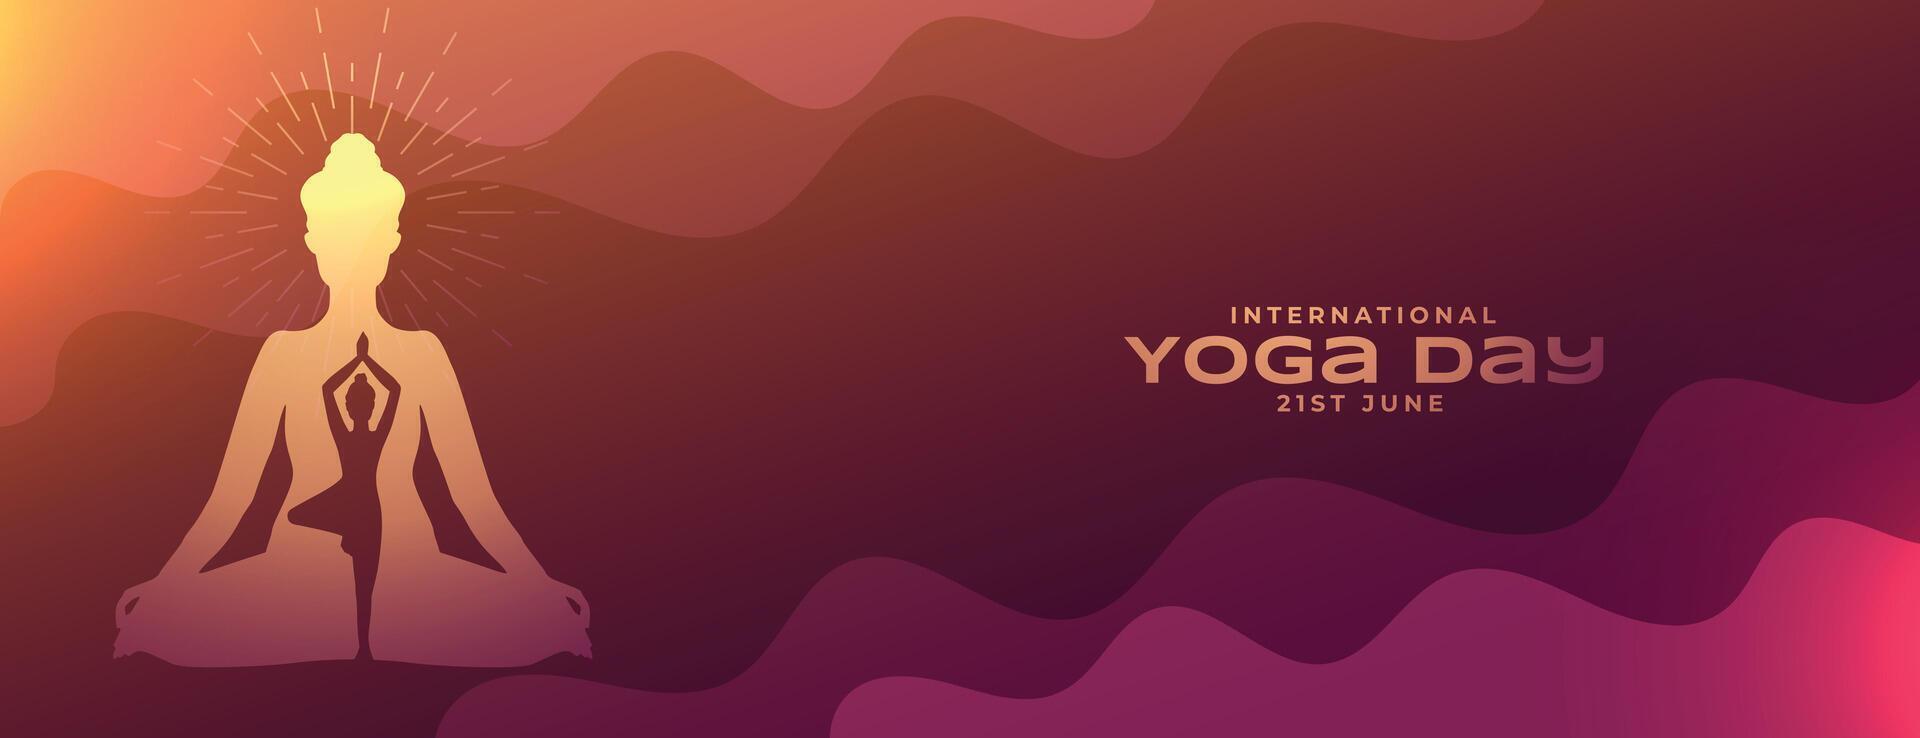 occhio attraente internazionale yoga dire manifesto per salutare stile di vita vettore